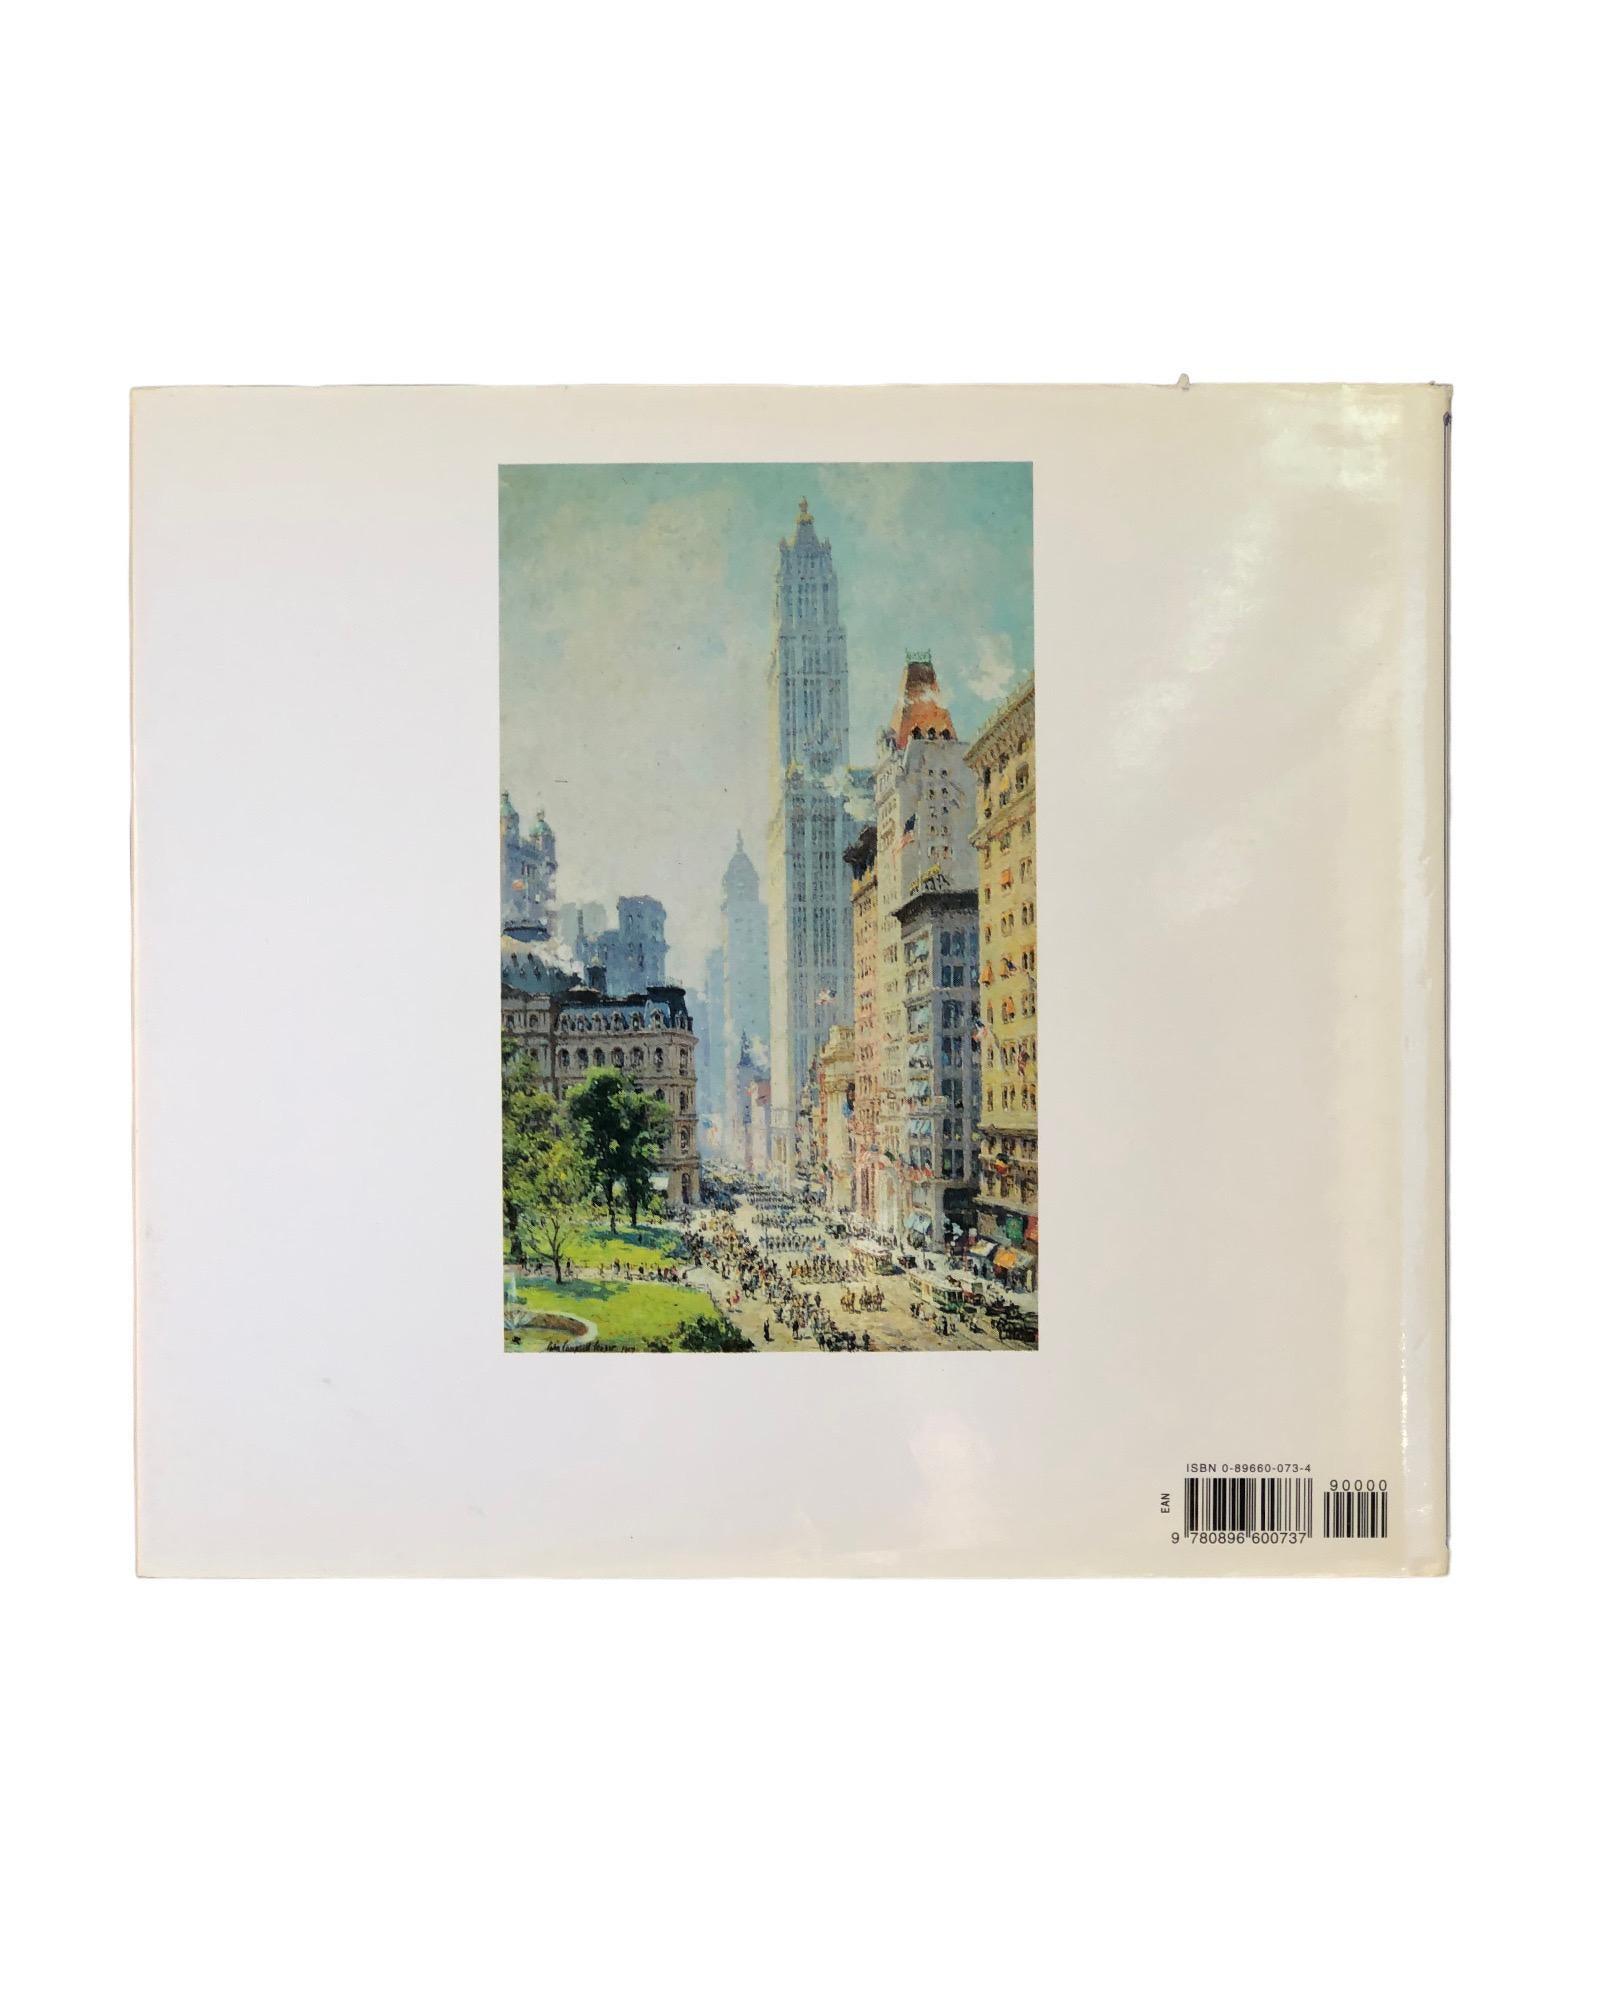 Le New York impressionniste par William H. Gerdts. Livre relié avec jaquette. Première édition publiée par Artabras en 1994. Imprimé en Italie, illustré, 224 pages.
